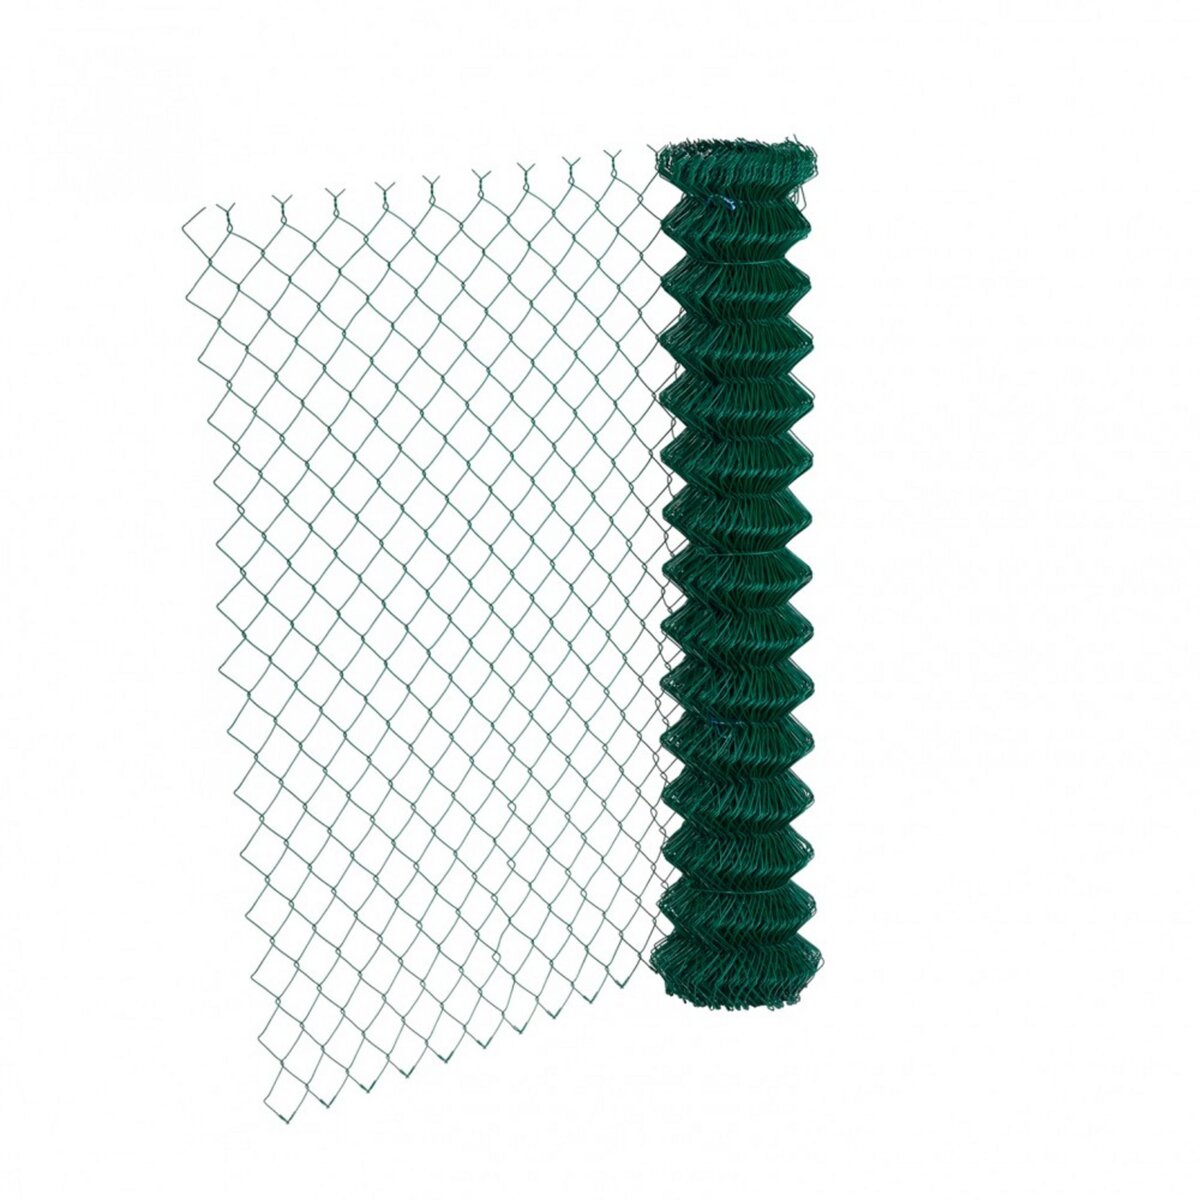 Centrale Brico Grillage rouleau simple torsion vert, Rouleau 20m, H